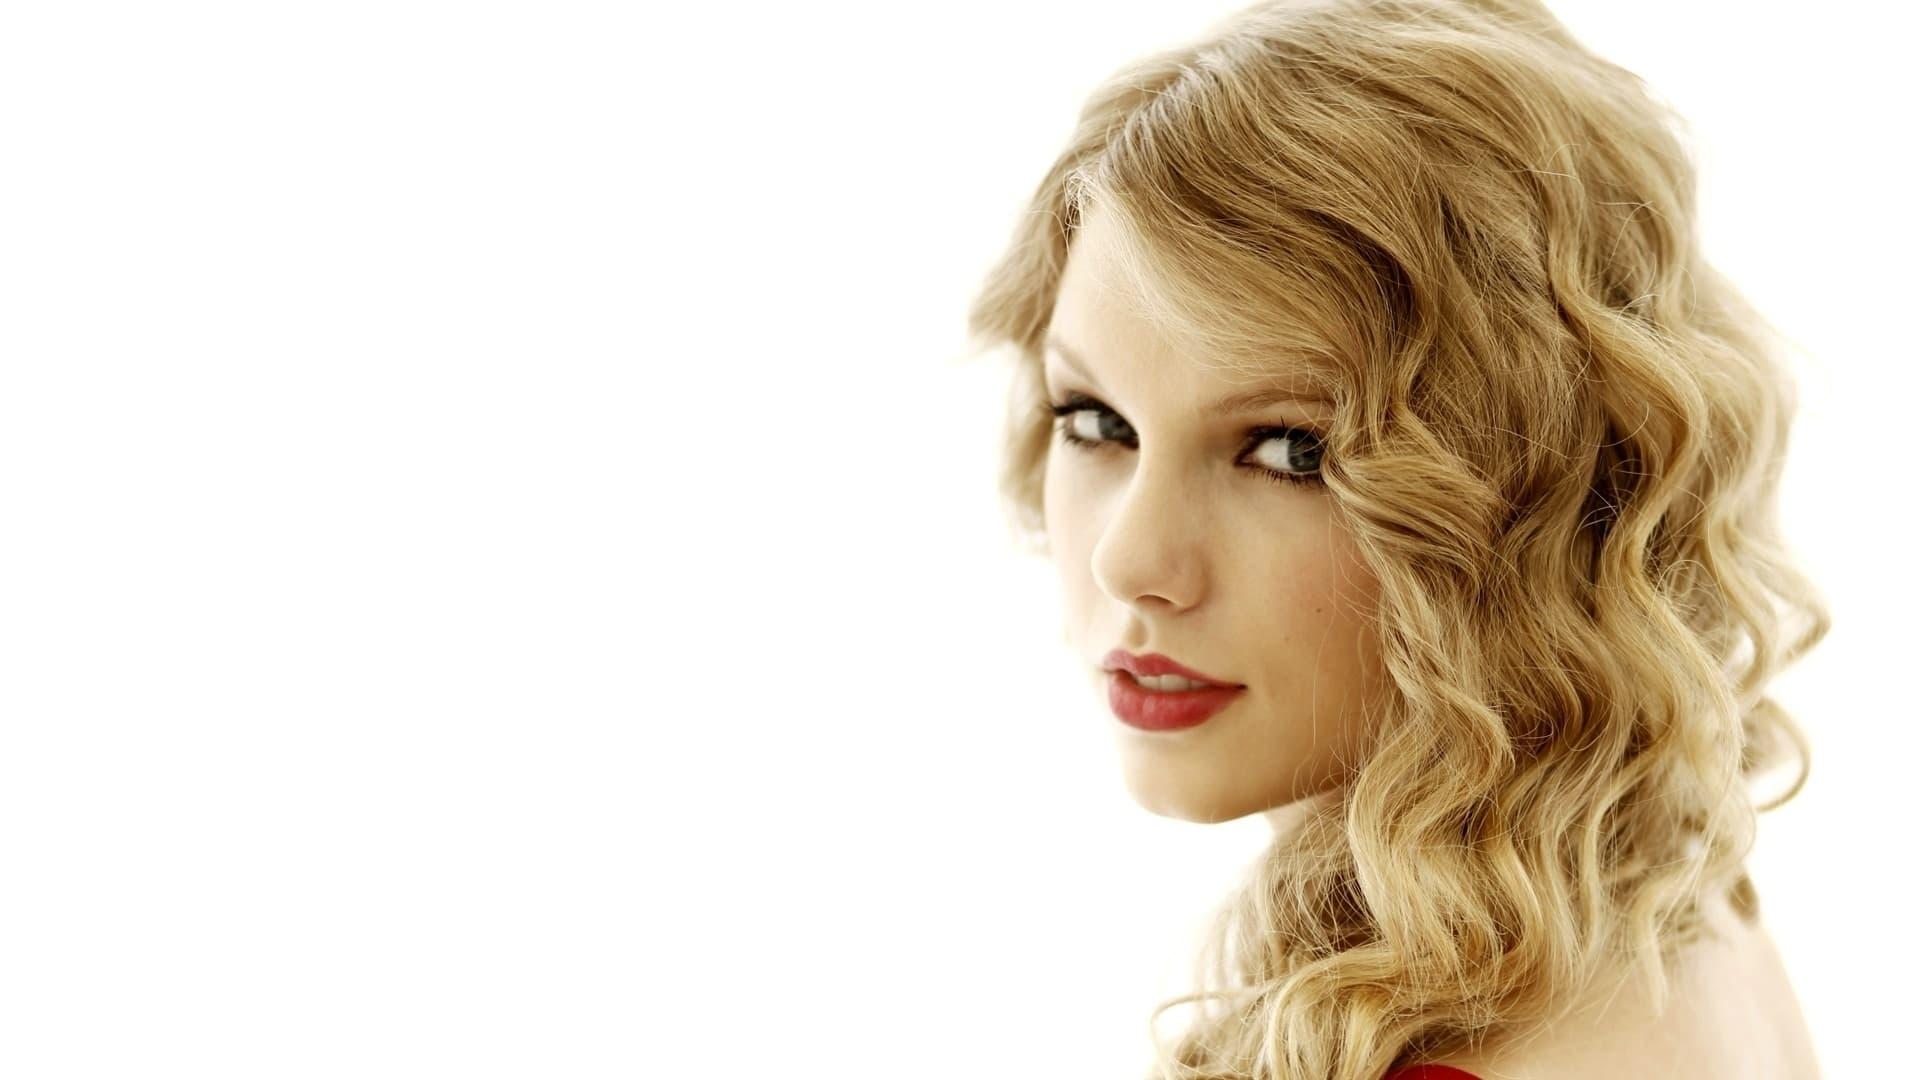 Taylor Swift: America's Sweetheart backdrop